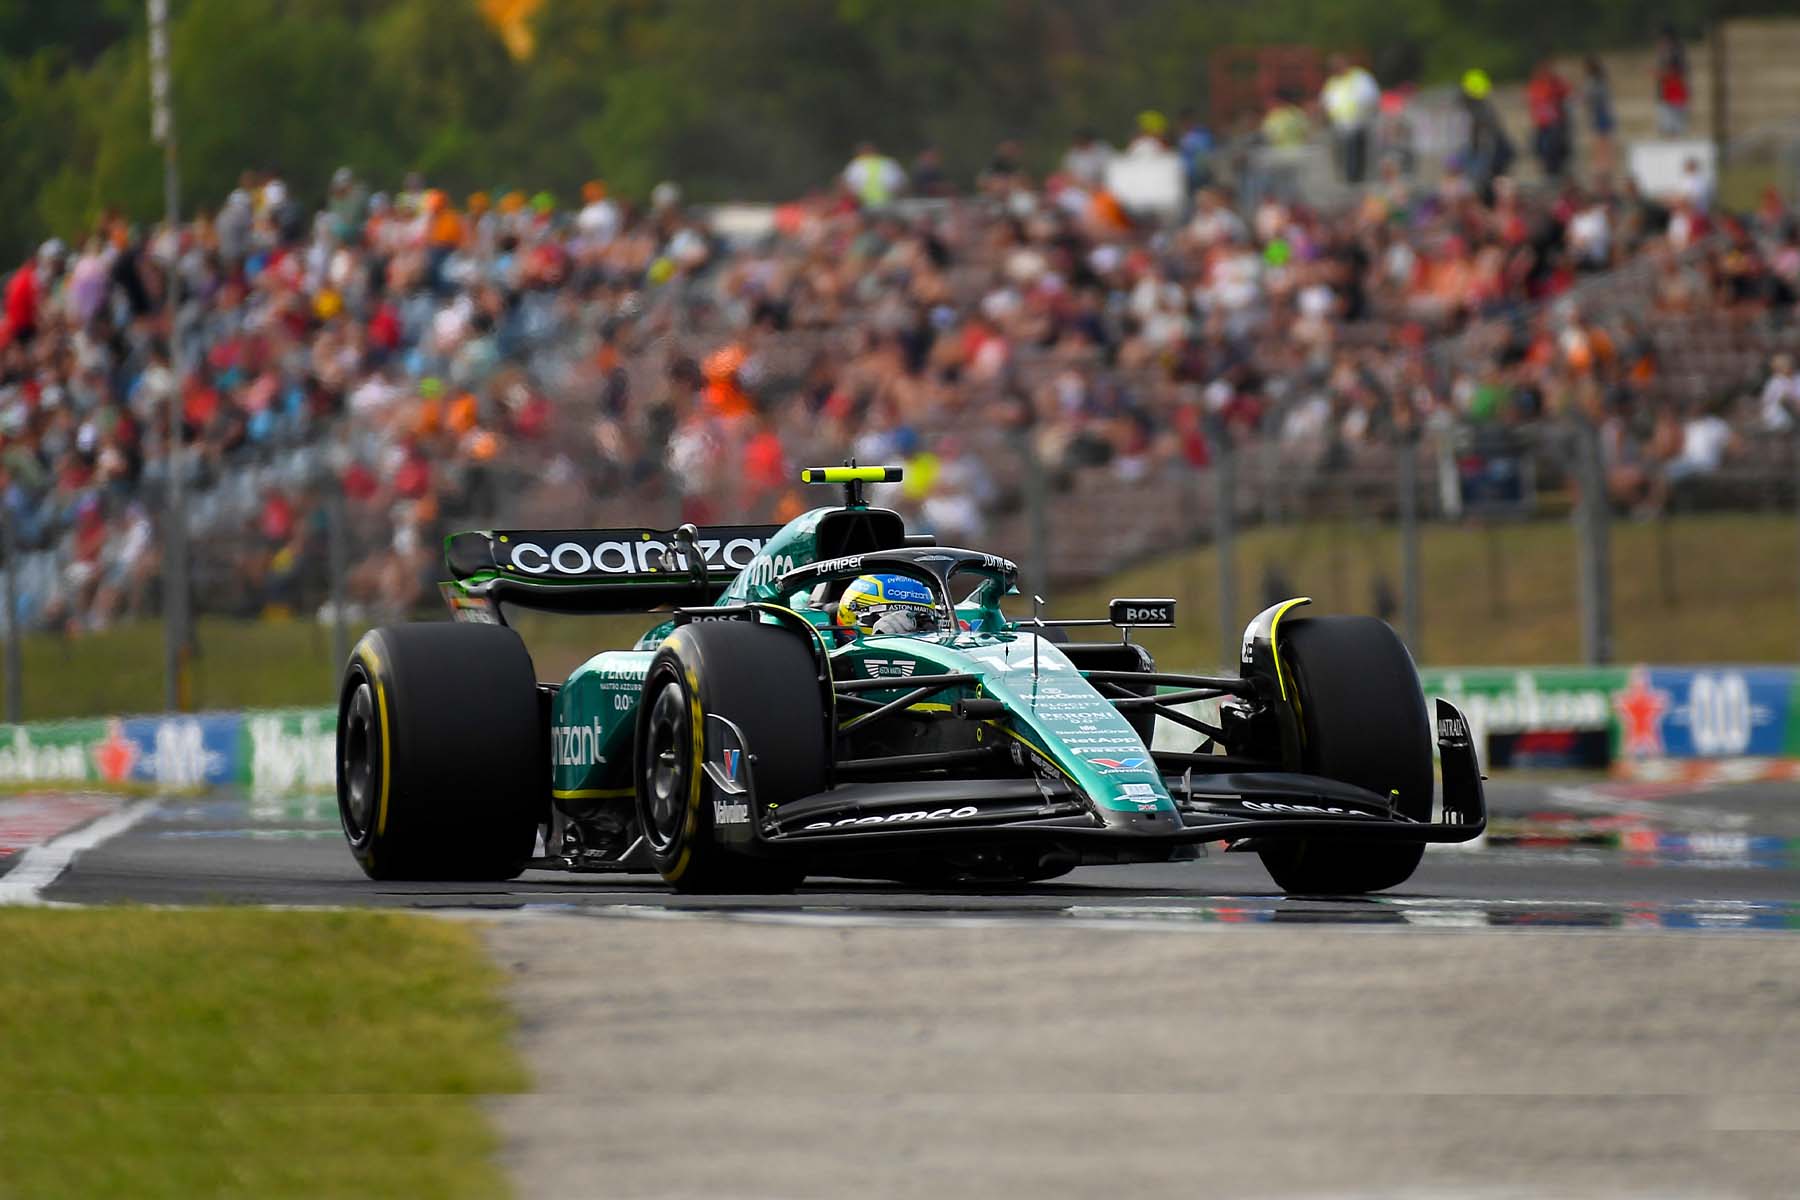 Ungarns Grand Prix